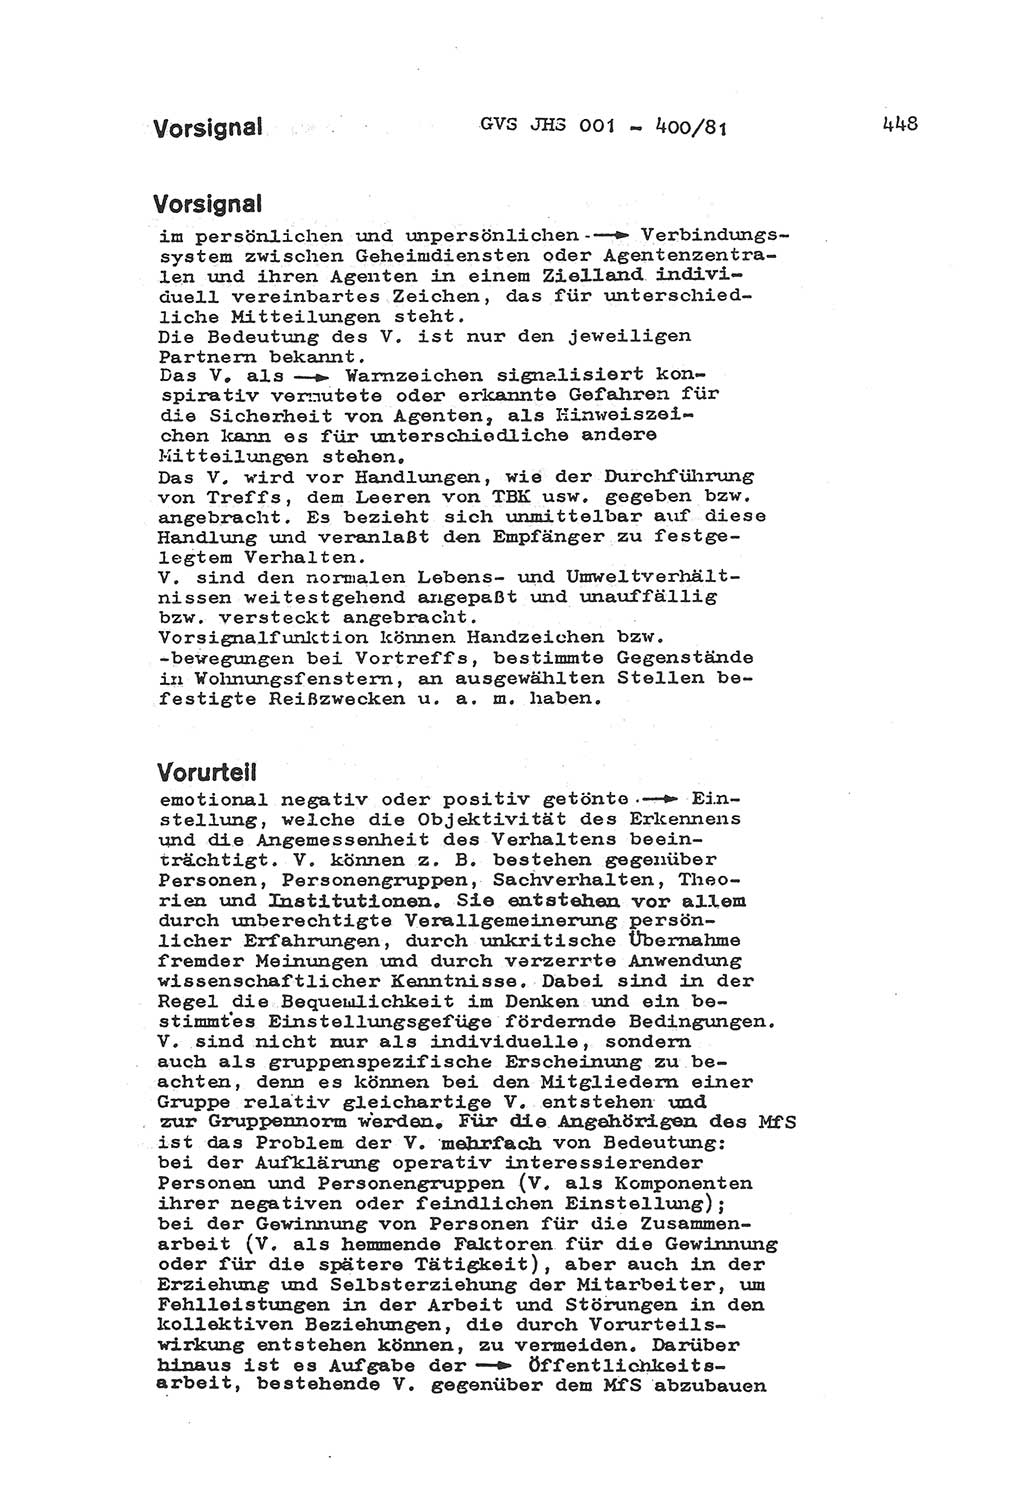 Wörterbuch der politisch-operativen Arbeit, Ministerium für Staatssicherheit (MfS) [Deutsche Demokratische Republik (DDR)], Juristische Hochschule (JHS), Geheime Verschlußsache (GVS) o001-400/81, Potsdam 1985, Blatt 448 (Wb. pol.-op. Arb. MfS DDR JHS GVS o001-400/81 1985, Bl. 448)